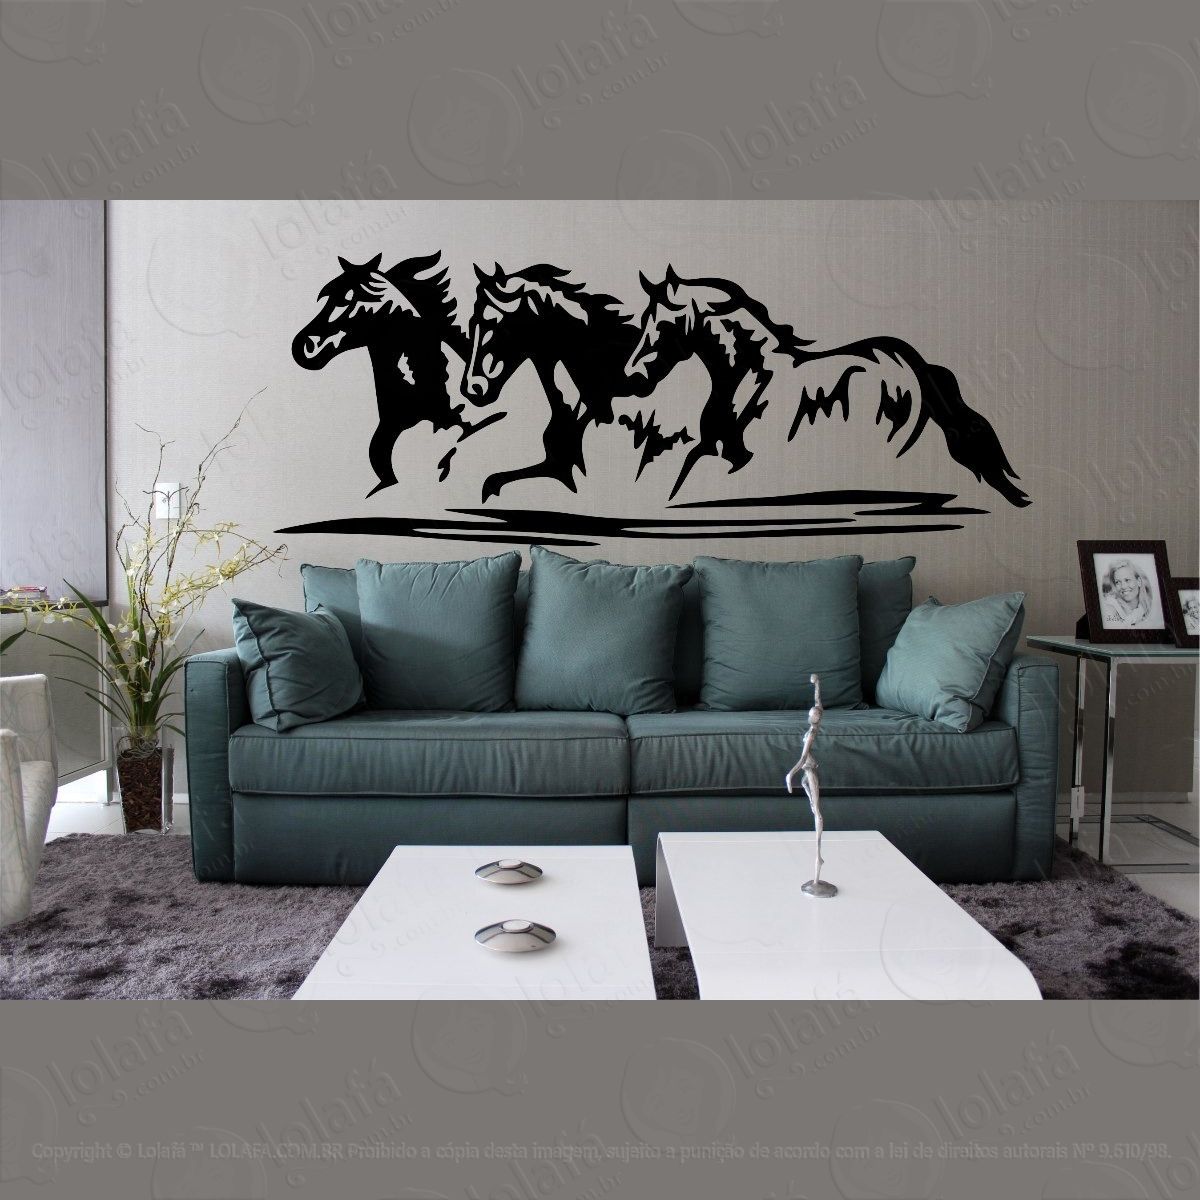 adesivo decorativo parede quarto sala cavalo cowboy rodeio mod:887